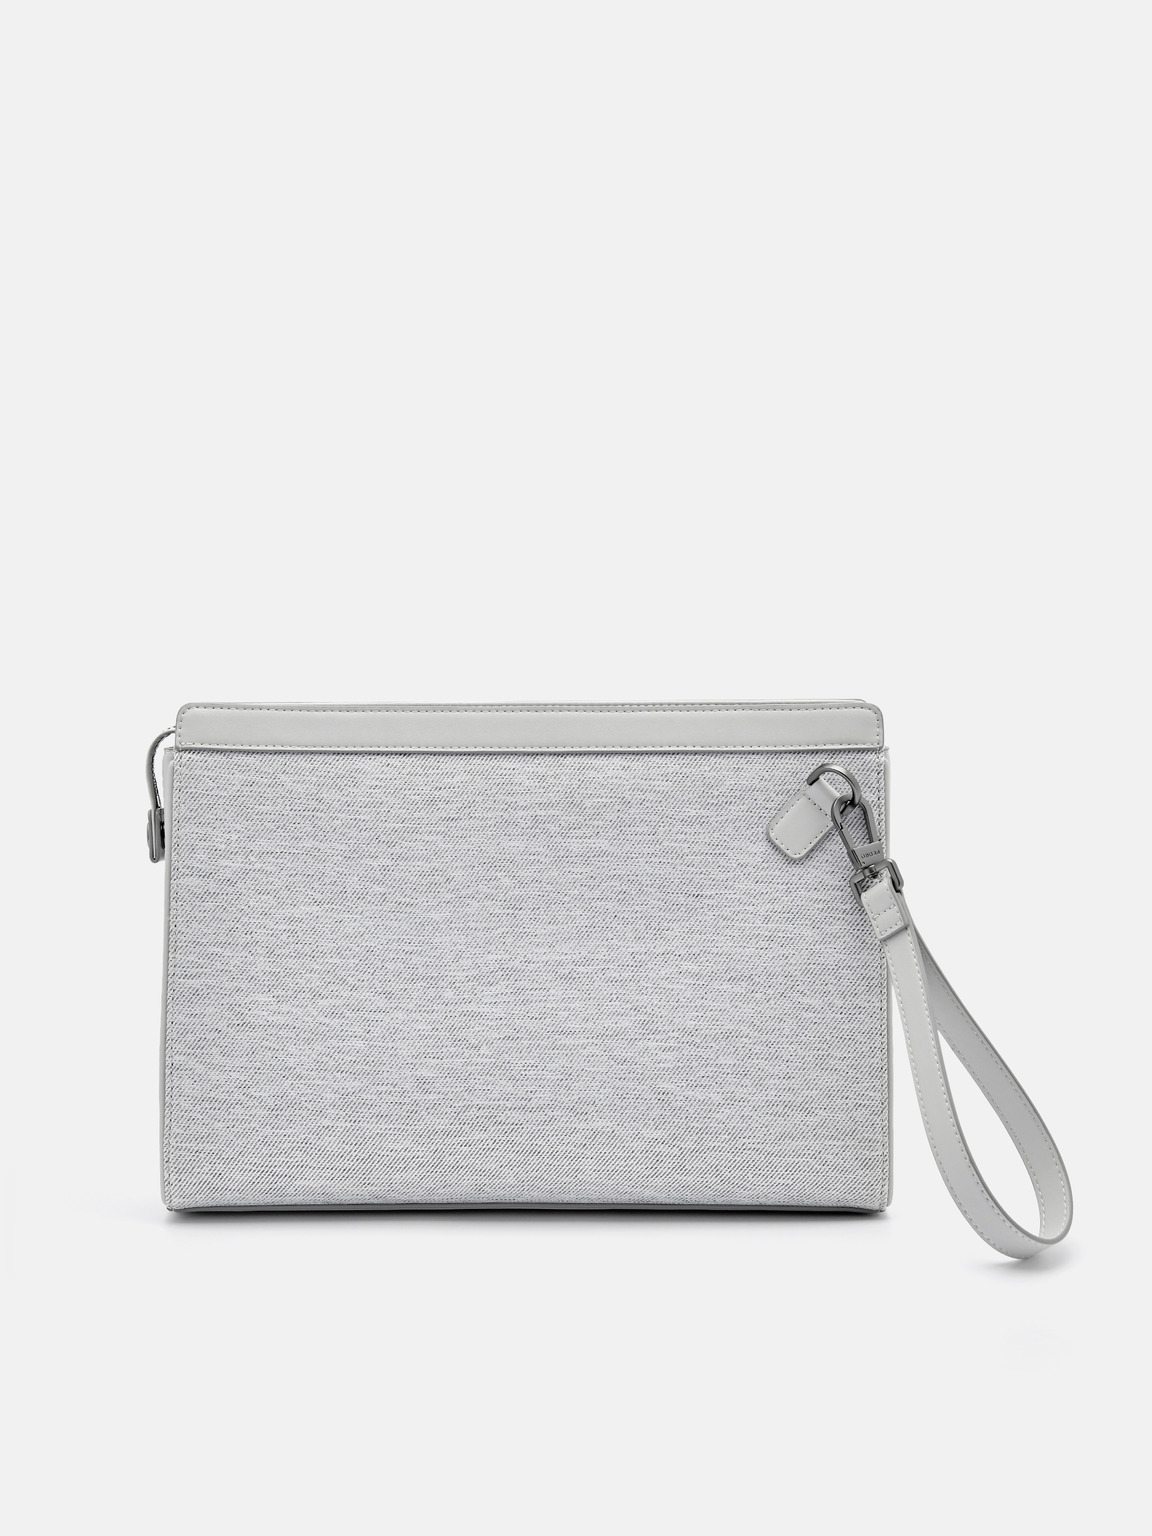 Evans Portfolio Bag, Light Grey